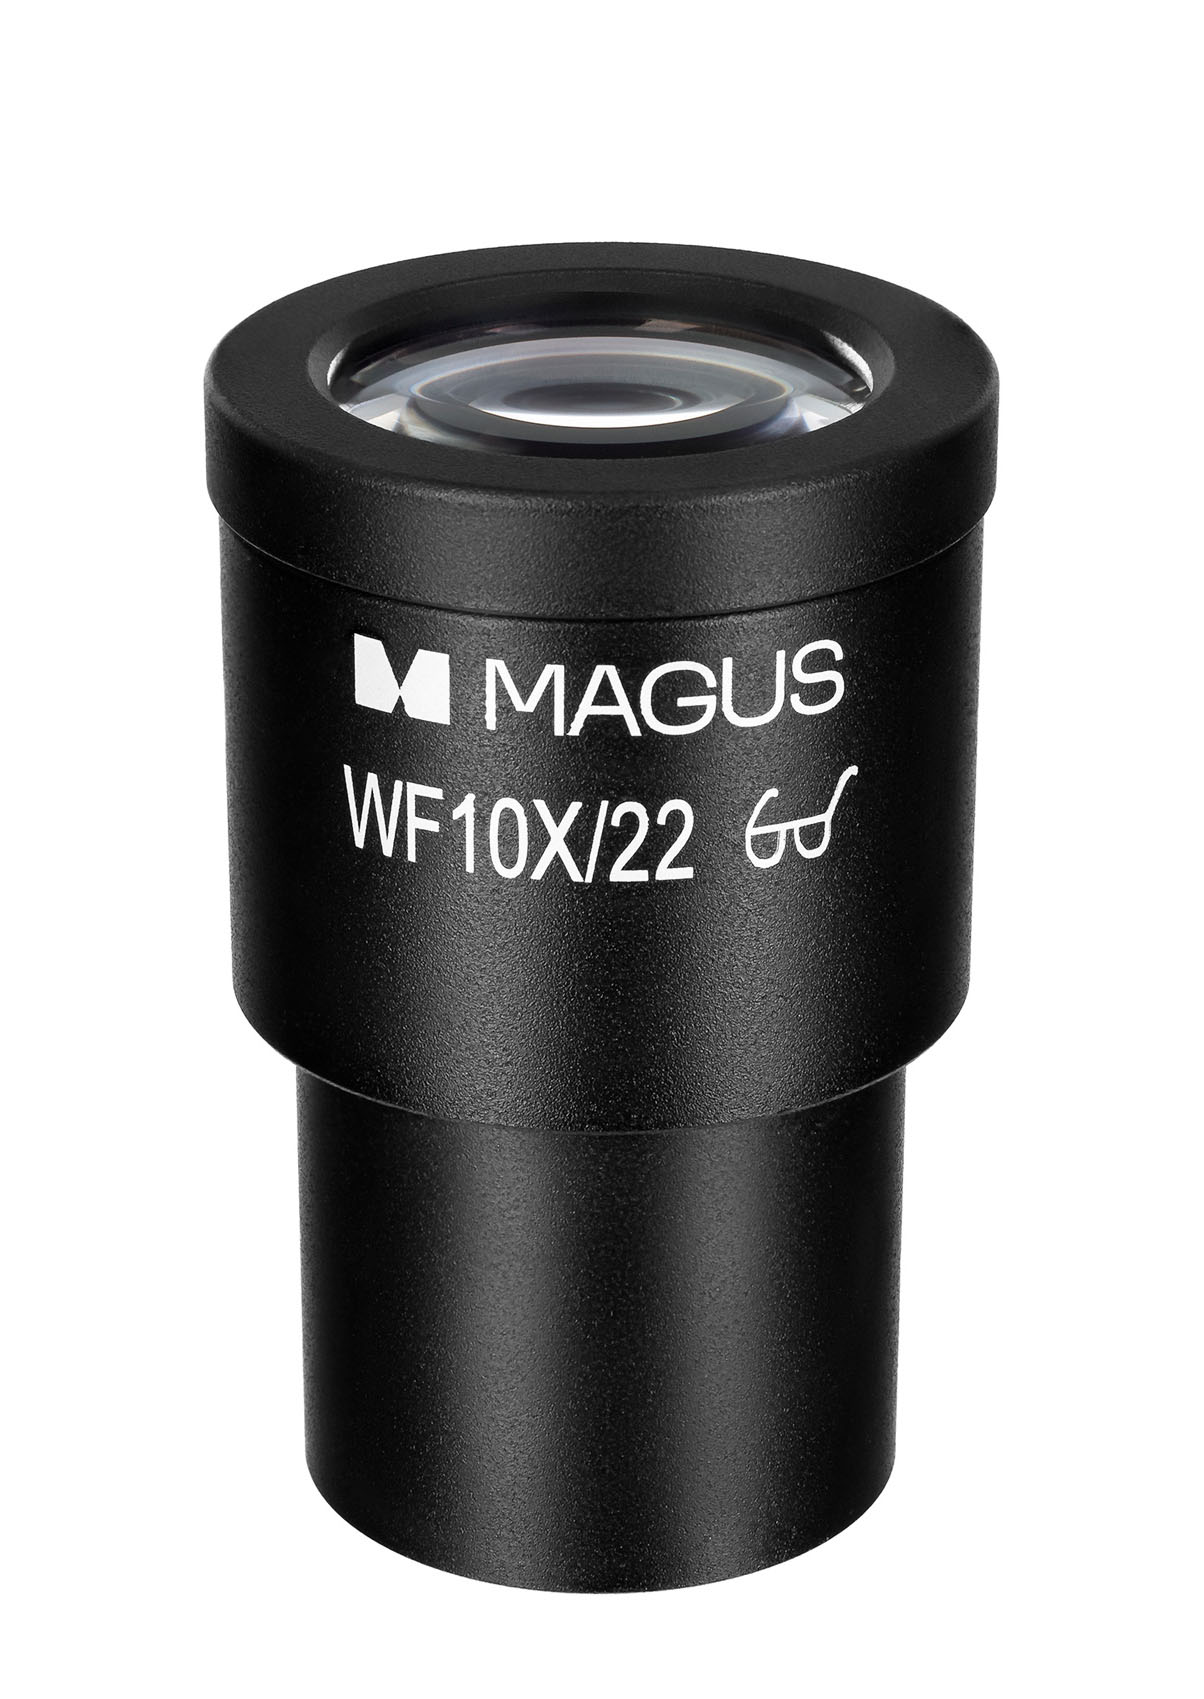 фото: аксессуары для микроскопa металлографического цифрового MAGUS Metal D650 BD